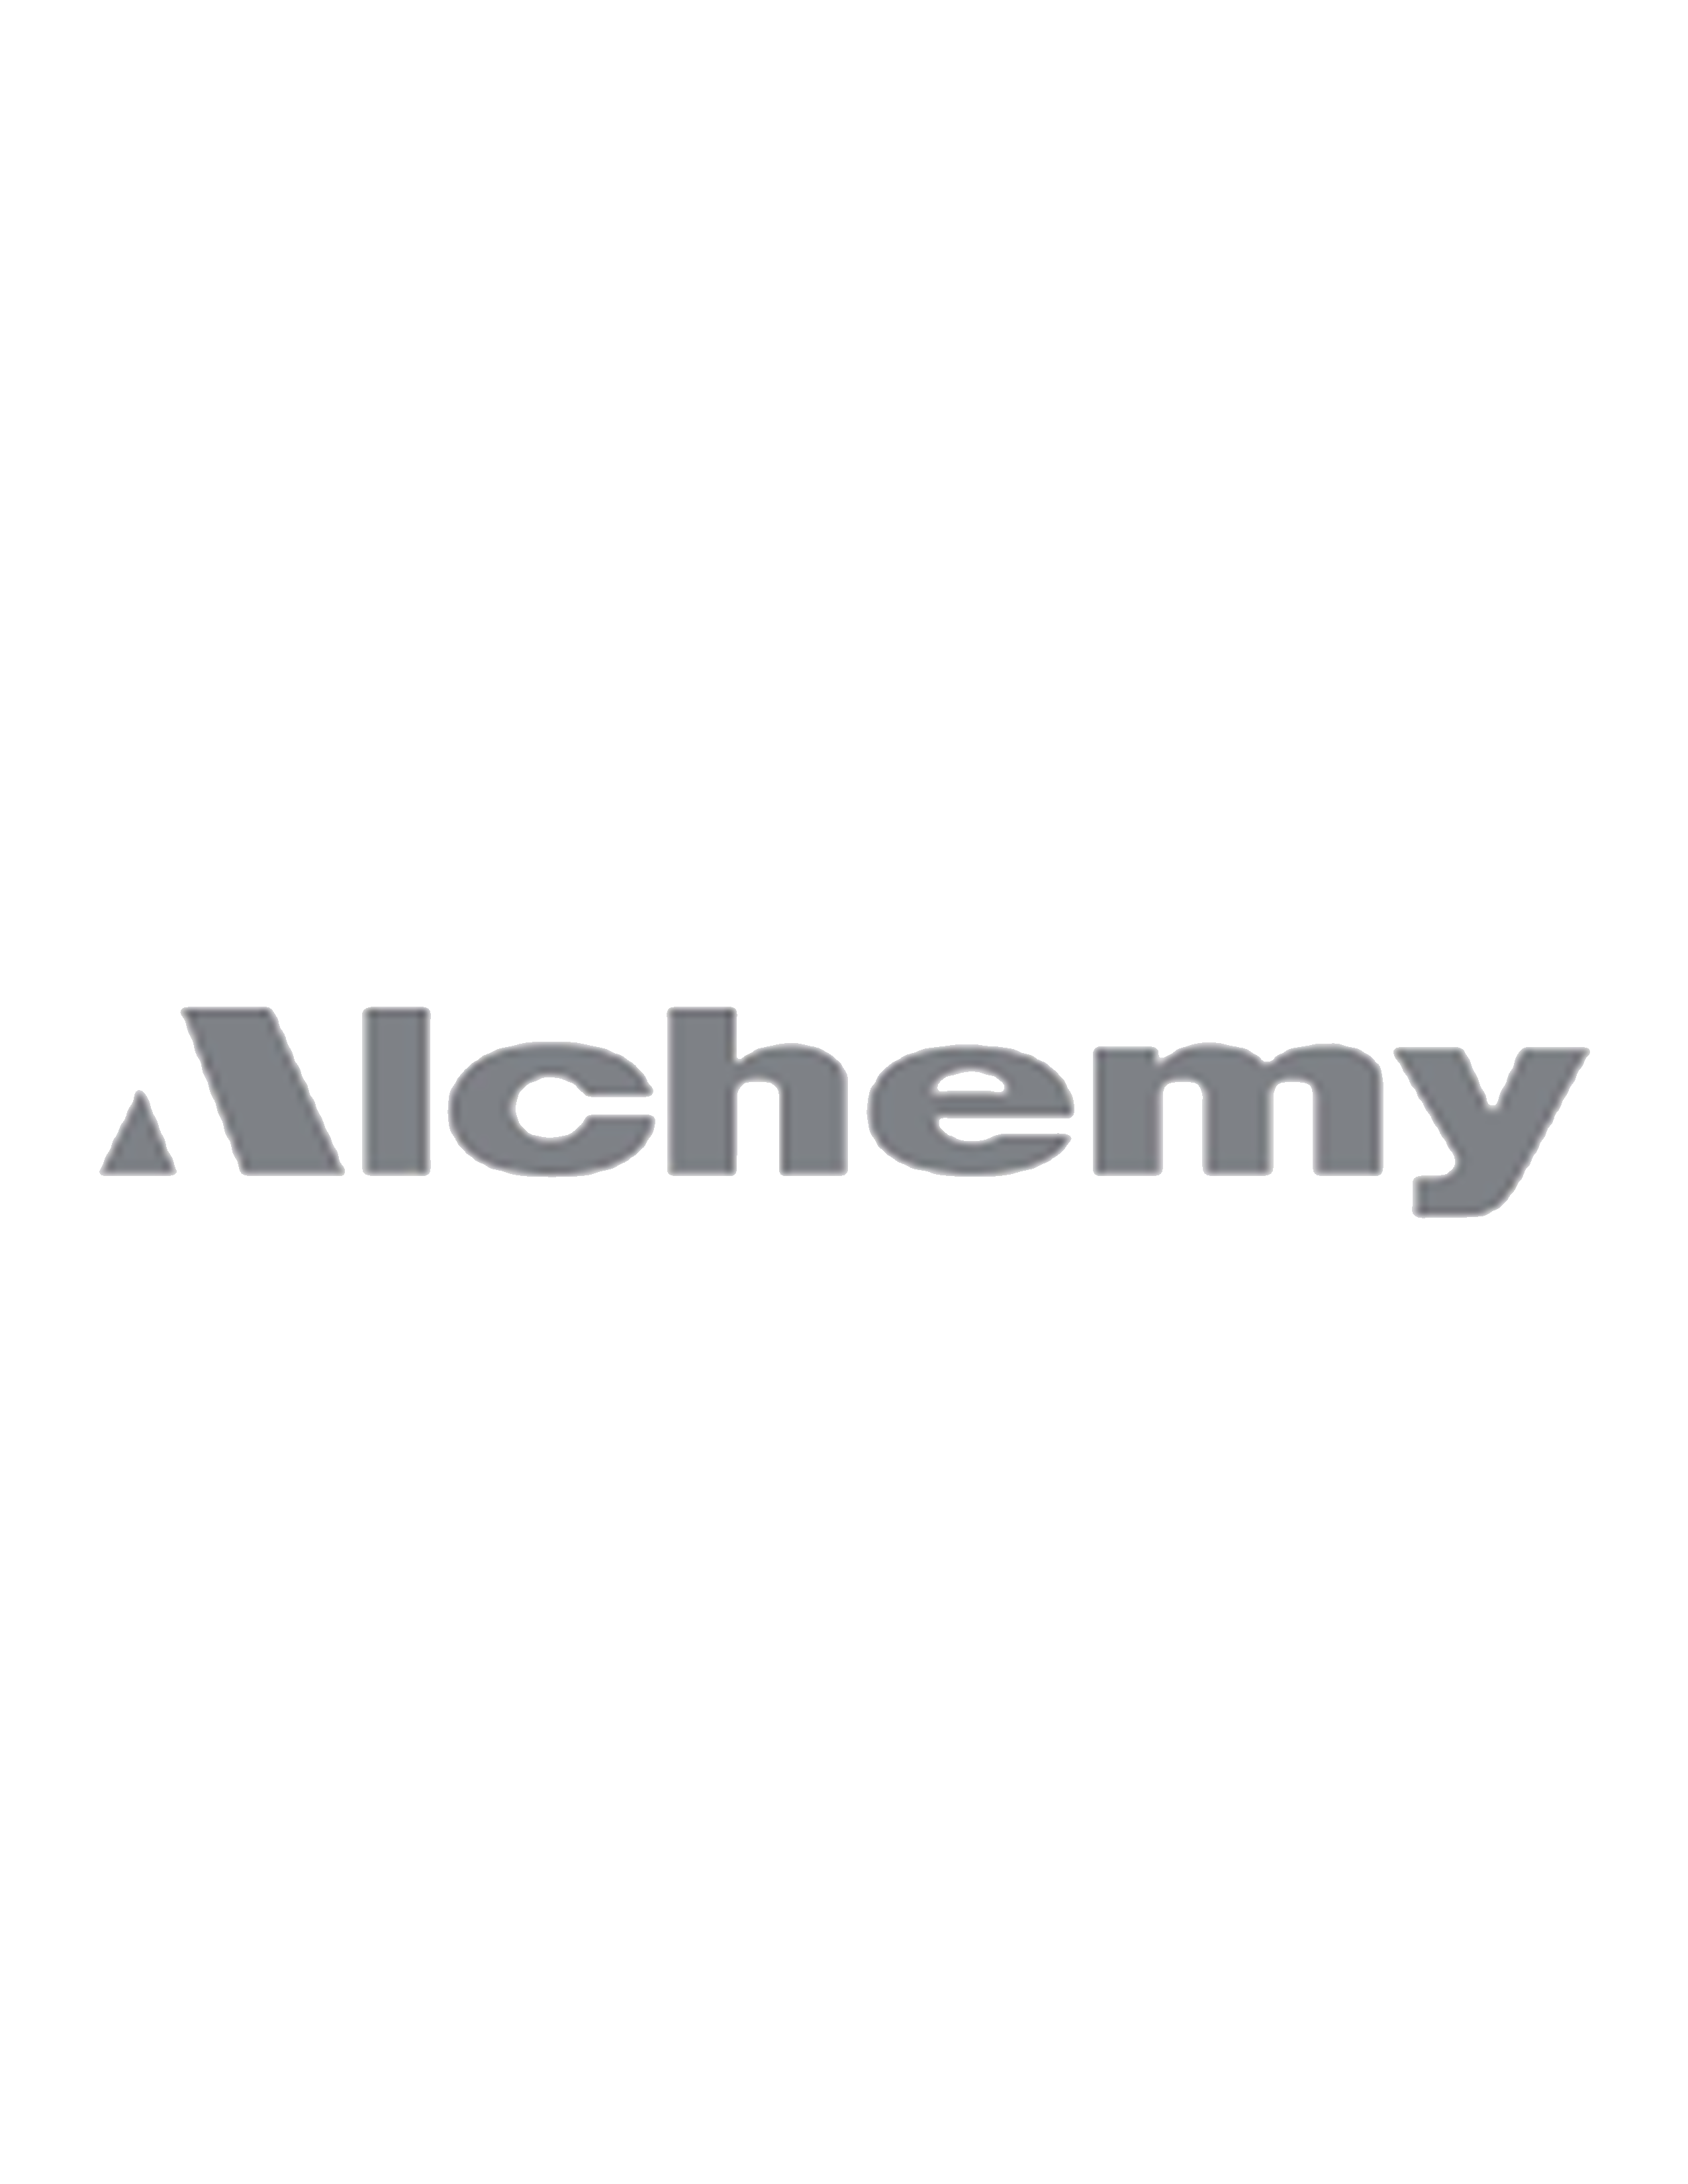 elchemy-2